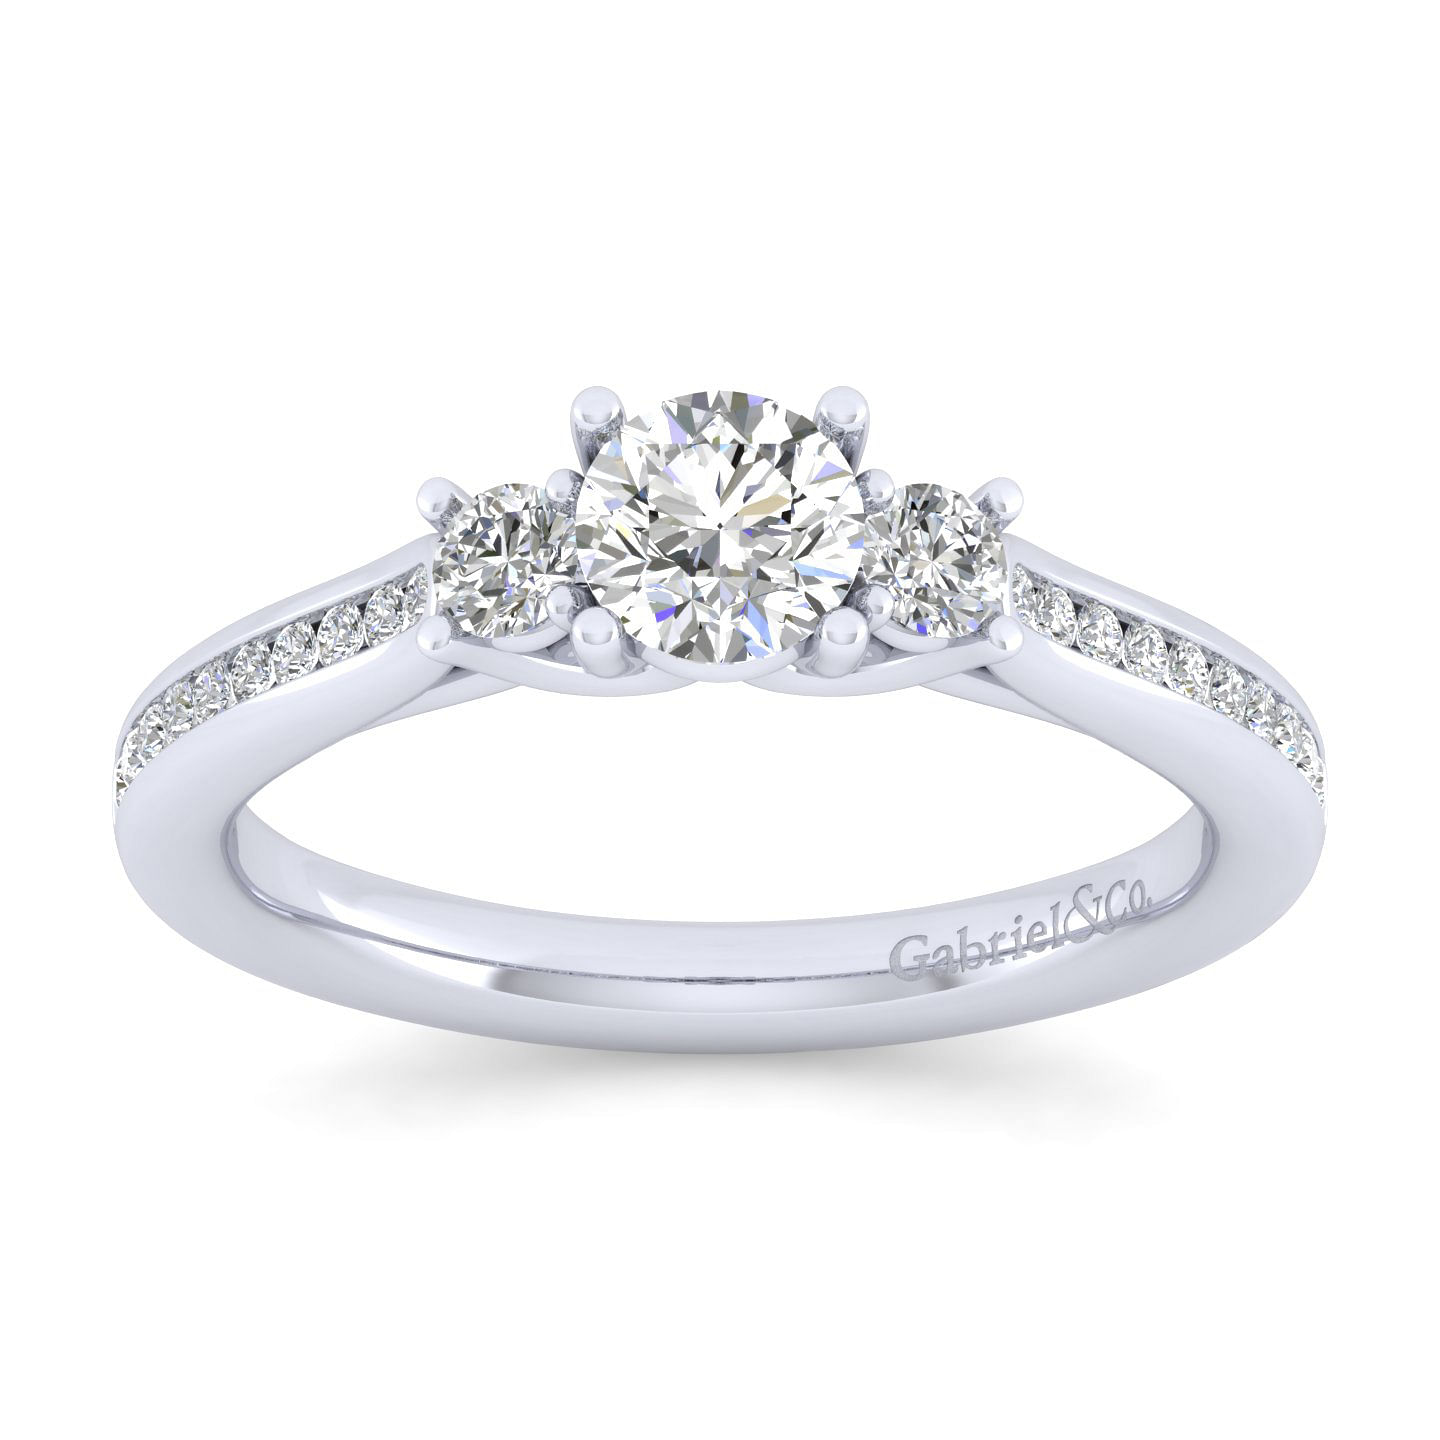 14K White Gold Round Three Stone Diamond Engagement Ring